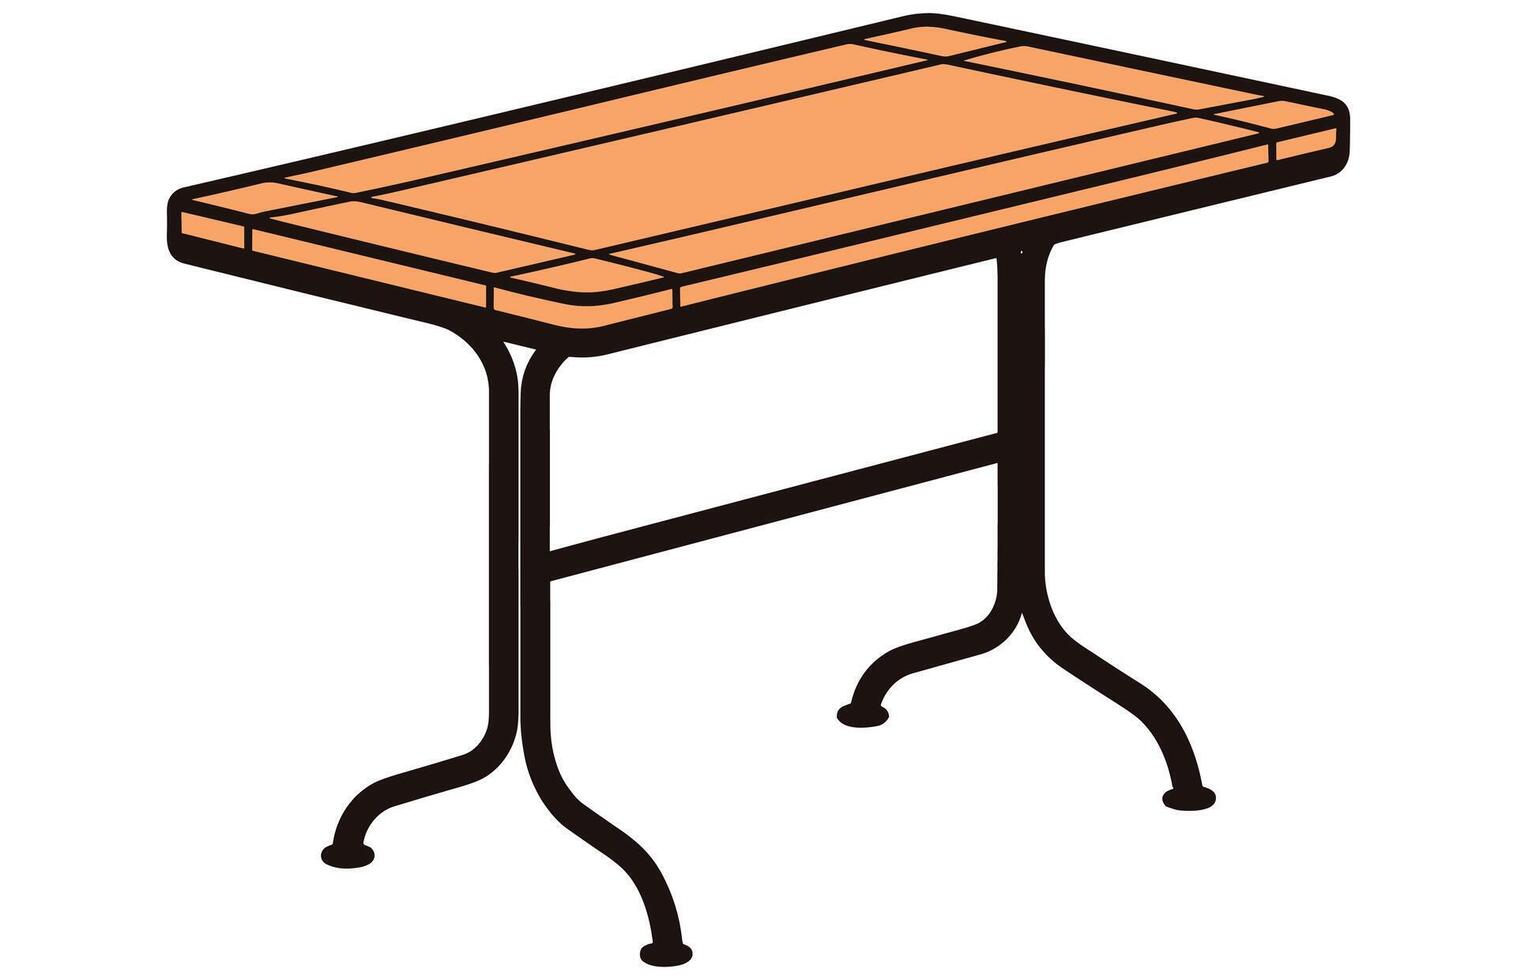 Terrasse Bereich Cafe und Garten Möbel Tabelle Vektor, Terrasse Schreibtisch Illustration vektor